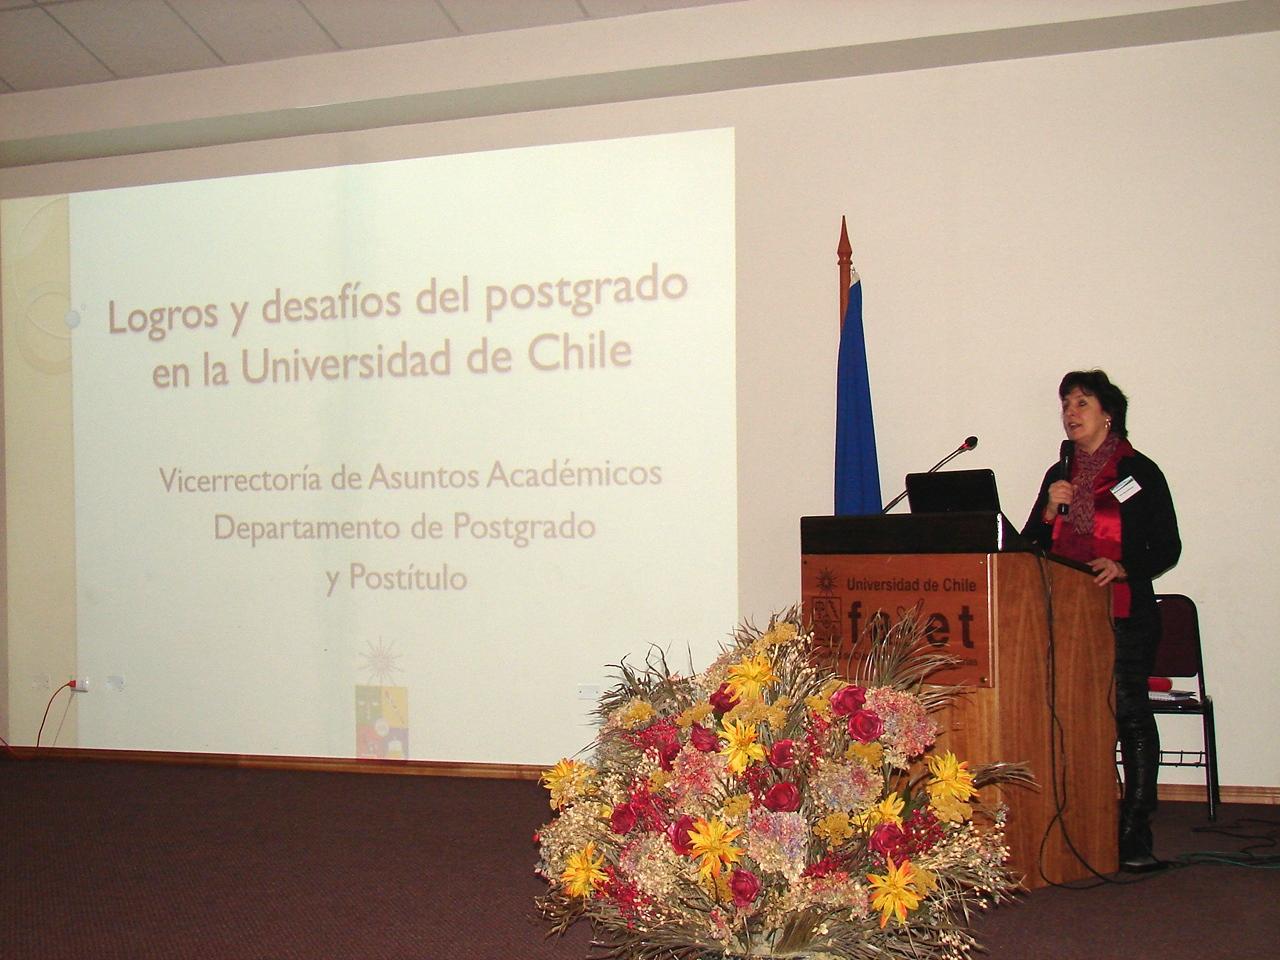 La Directora dio a conocer la situación de los Postgrados en la Universidad de Chile. Existiendo una oferta de 38 Programas de Doctorado.